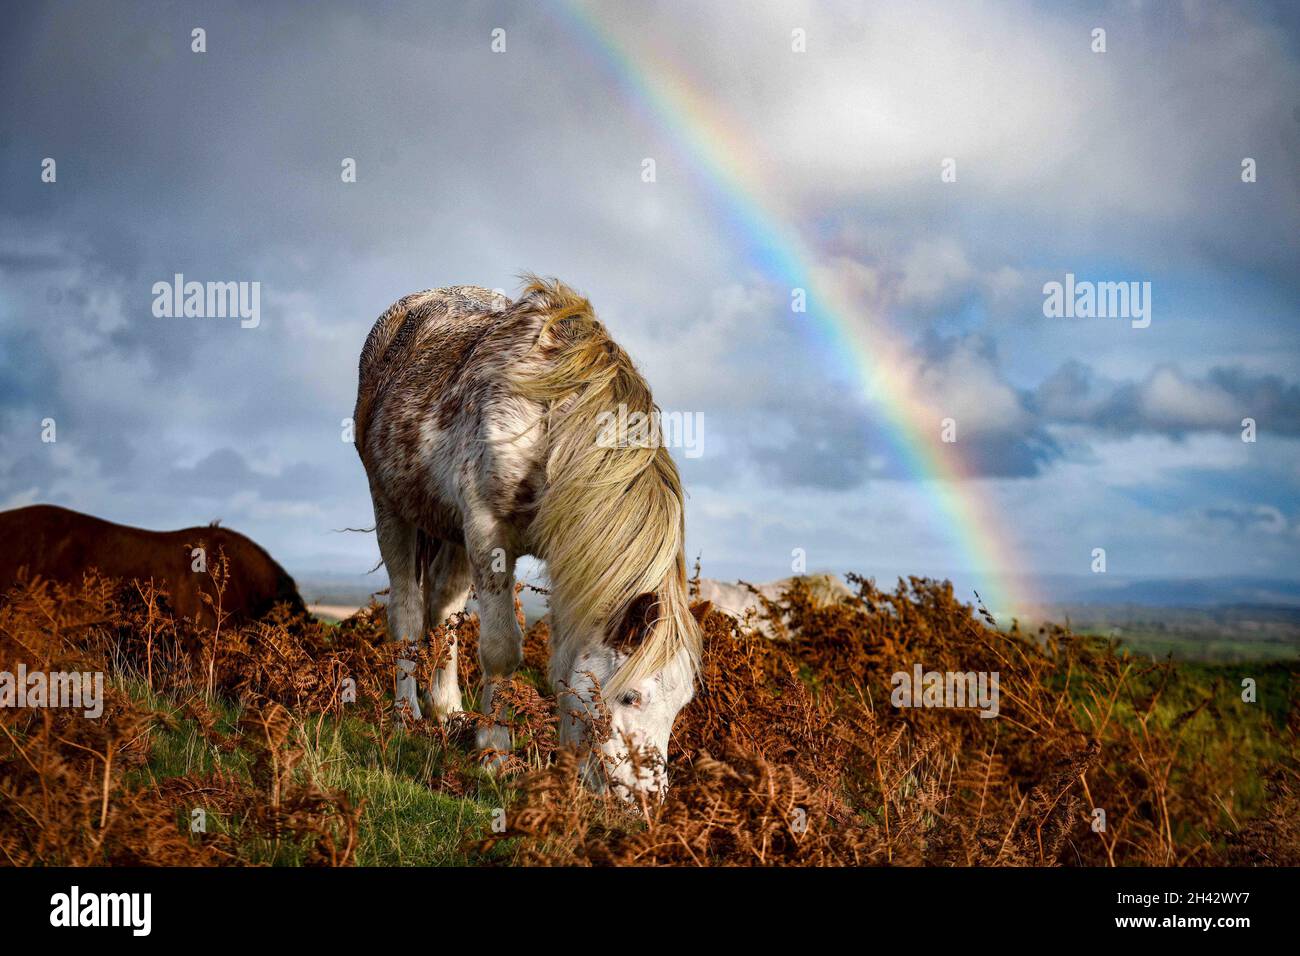 Ein wildes Pony ernährt sich auf der Gower Peninsula von Gras, während an einem nassen Tag in Südwales ein Regenbogen am Himmel erscheint. Die robusten Tiere haben sich seit der Römerzeit entwickelt, um wild auf der rauen Landschaft des Gower zu leben, und sind ein üblicher Anblick auf den Hügeln. Stockfoto